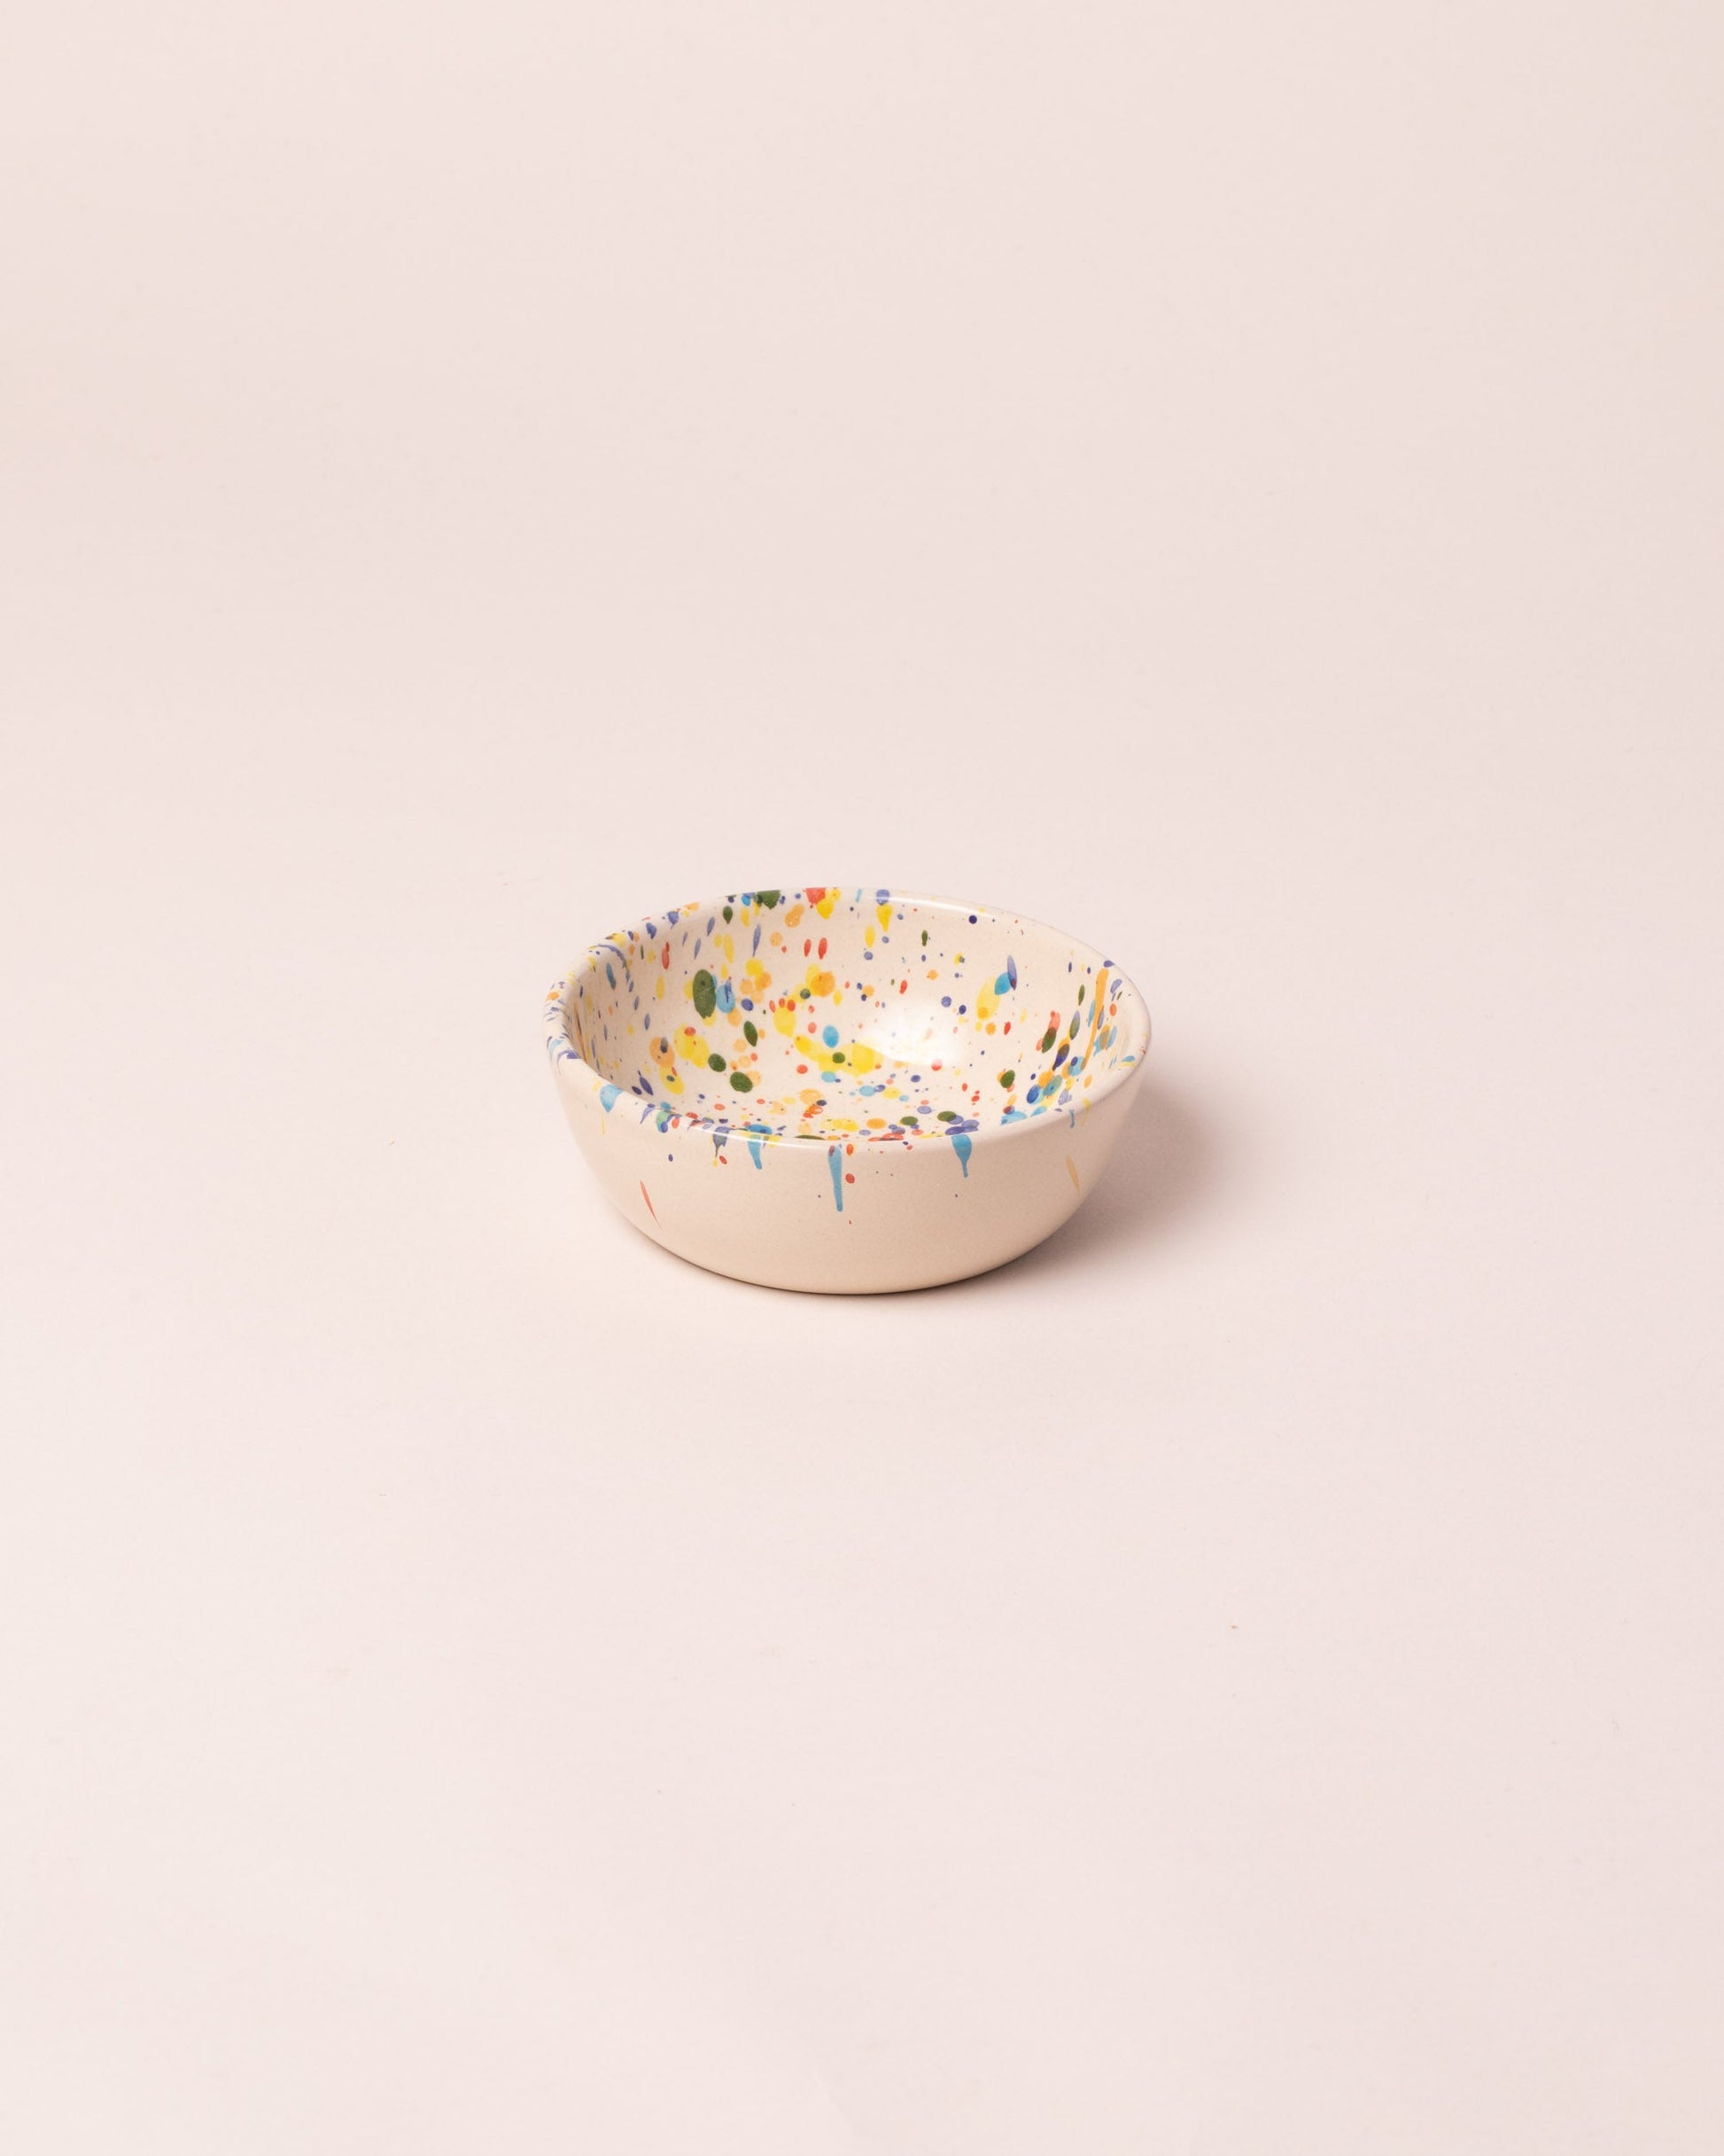 La Ceramica Vincenzo Del Monaco Colored Drops Dessert Bowl on light color background.